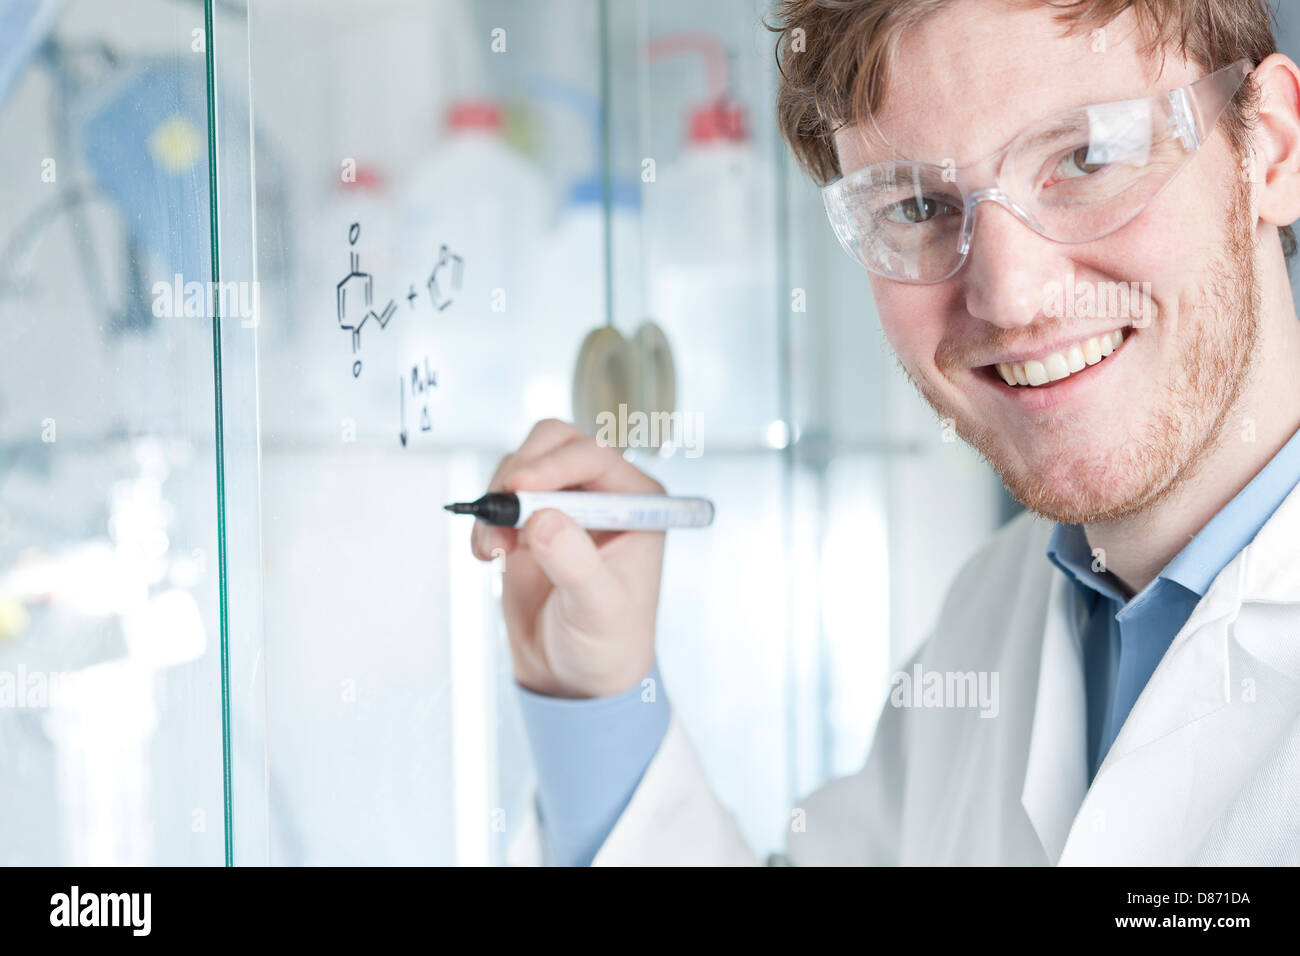 Germania, Ritratto di giovane scienziato scrittura equazione chimica su vetro, sorridente Foto Stock